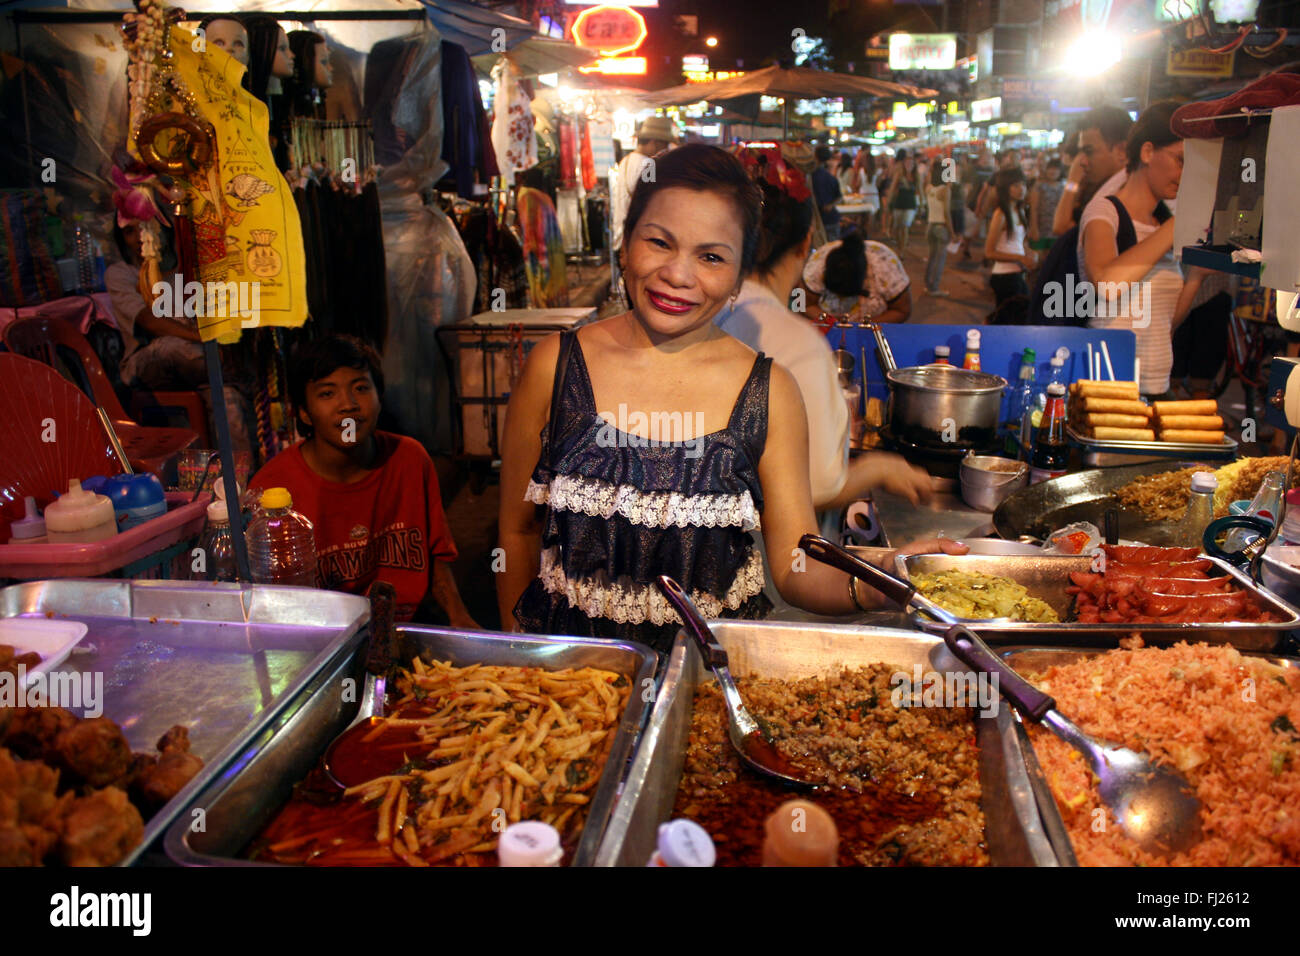 Streetlife and food at night in Bangkok Stock Photo